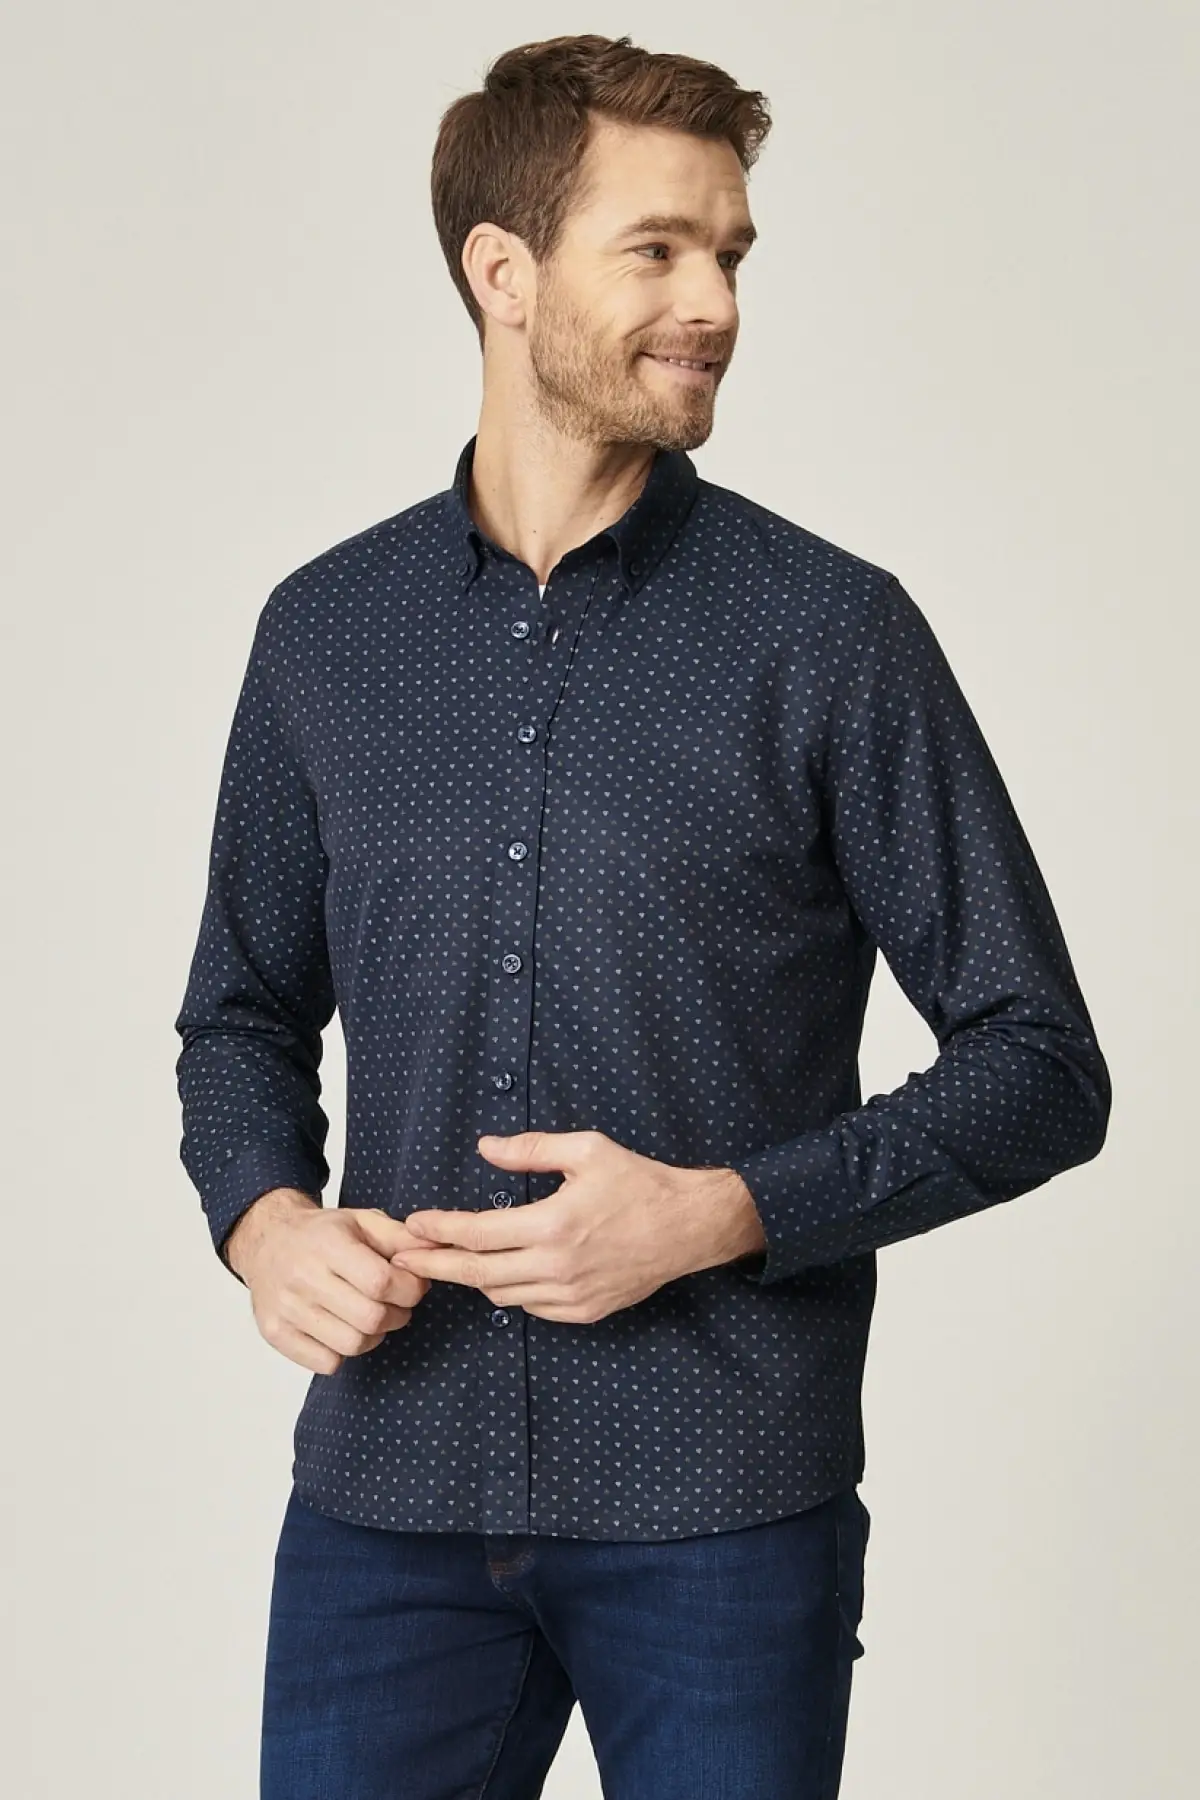 

Мужская приталенная рубашка с принтом, темно-сине-коричневая рубашка с узким вырезом и пуговицами на воротнике